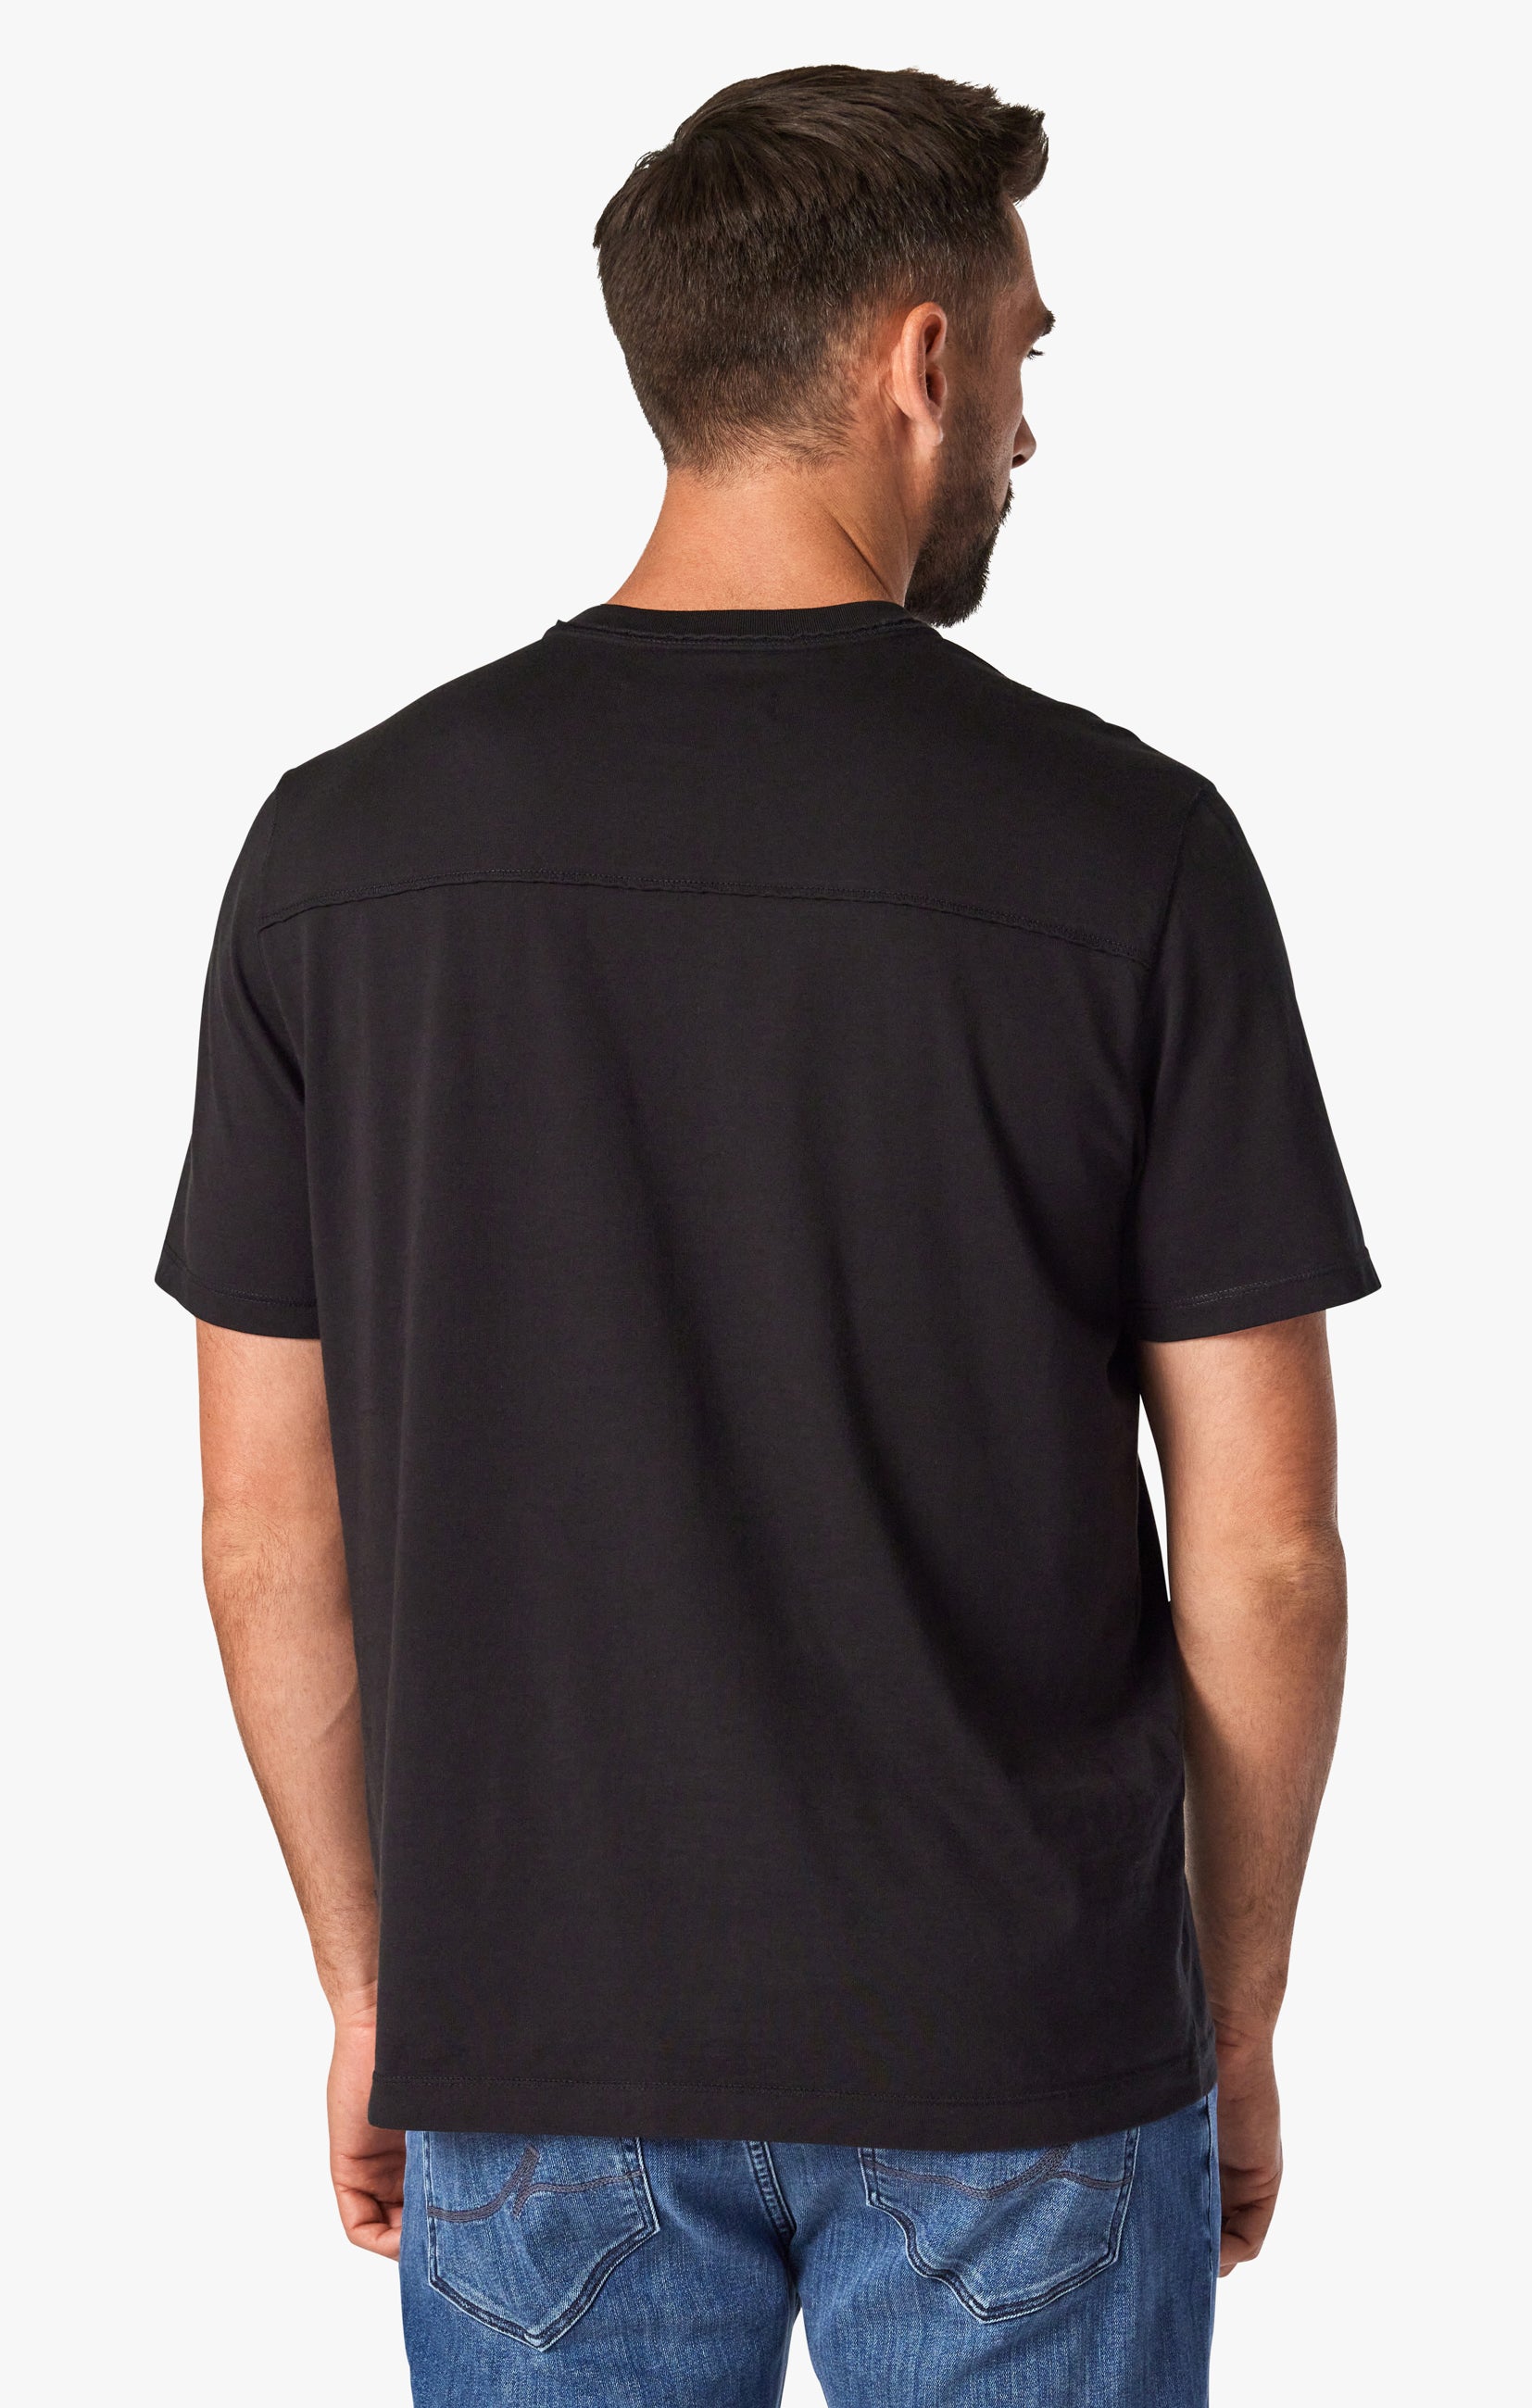 Deconstructed V-Neck T-Shirt in Black Image 2